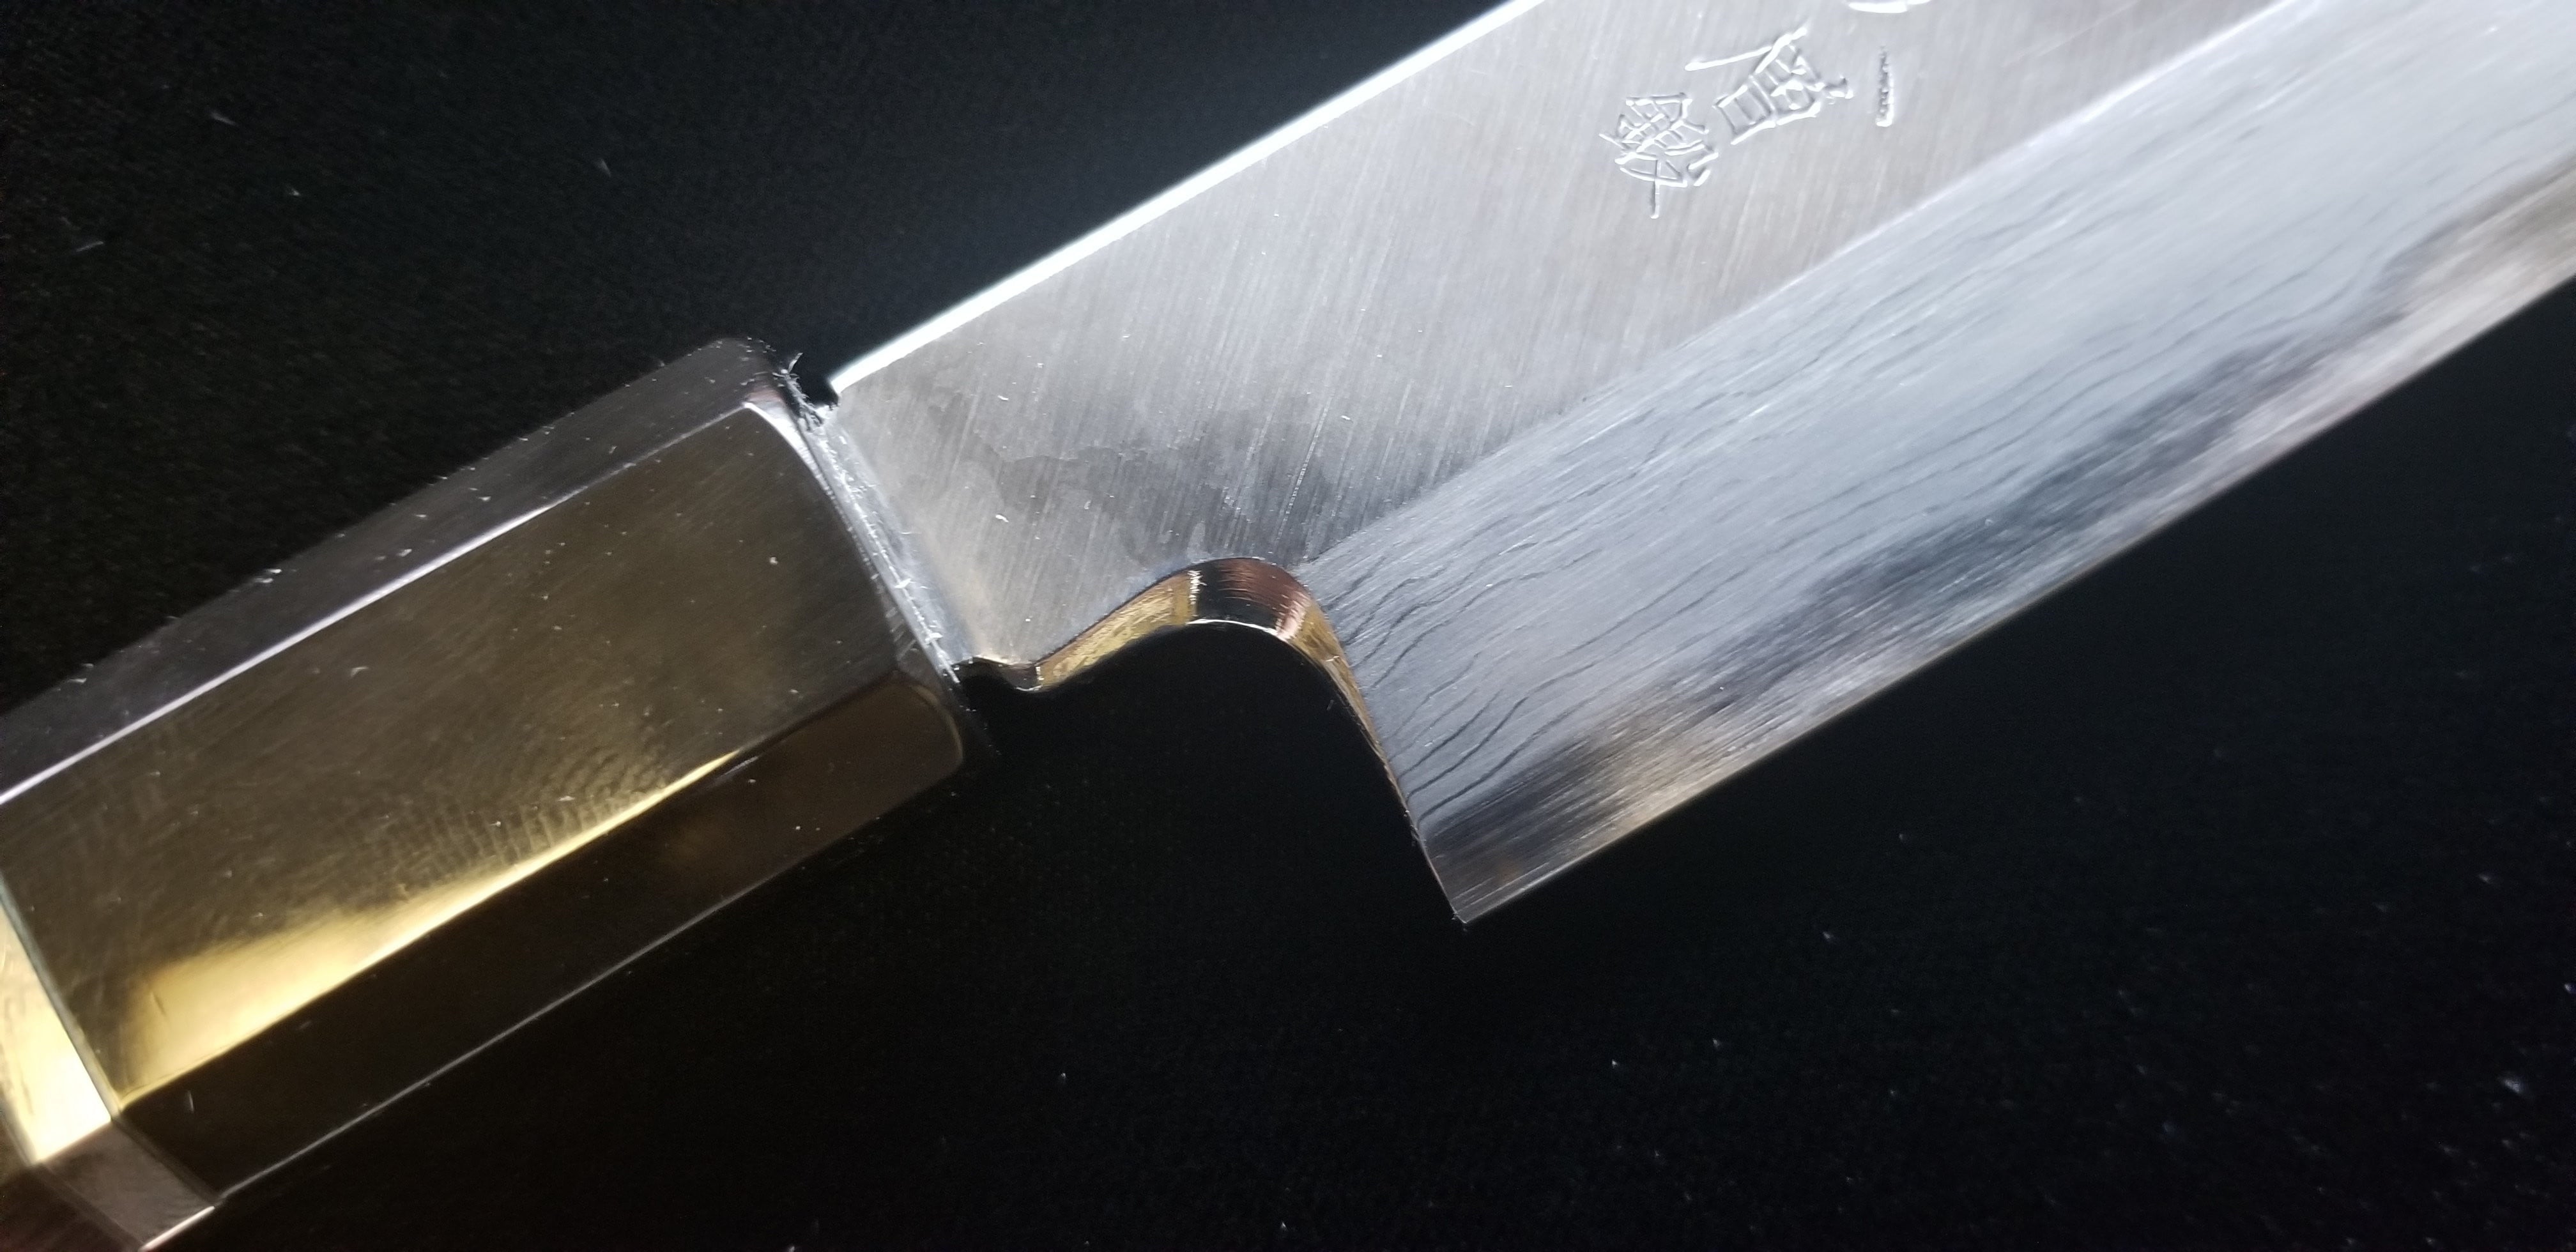 有次层锻青钢本霞柳刃270mm – Chitose Knives